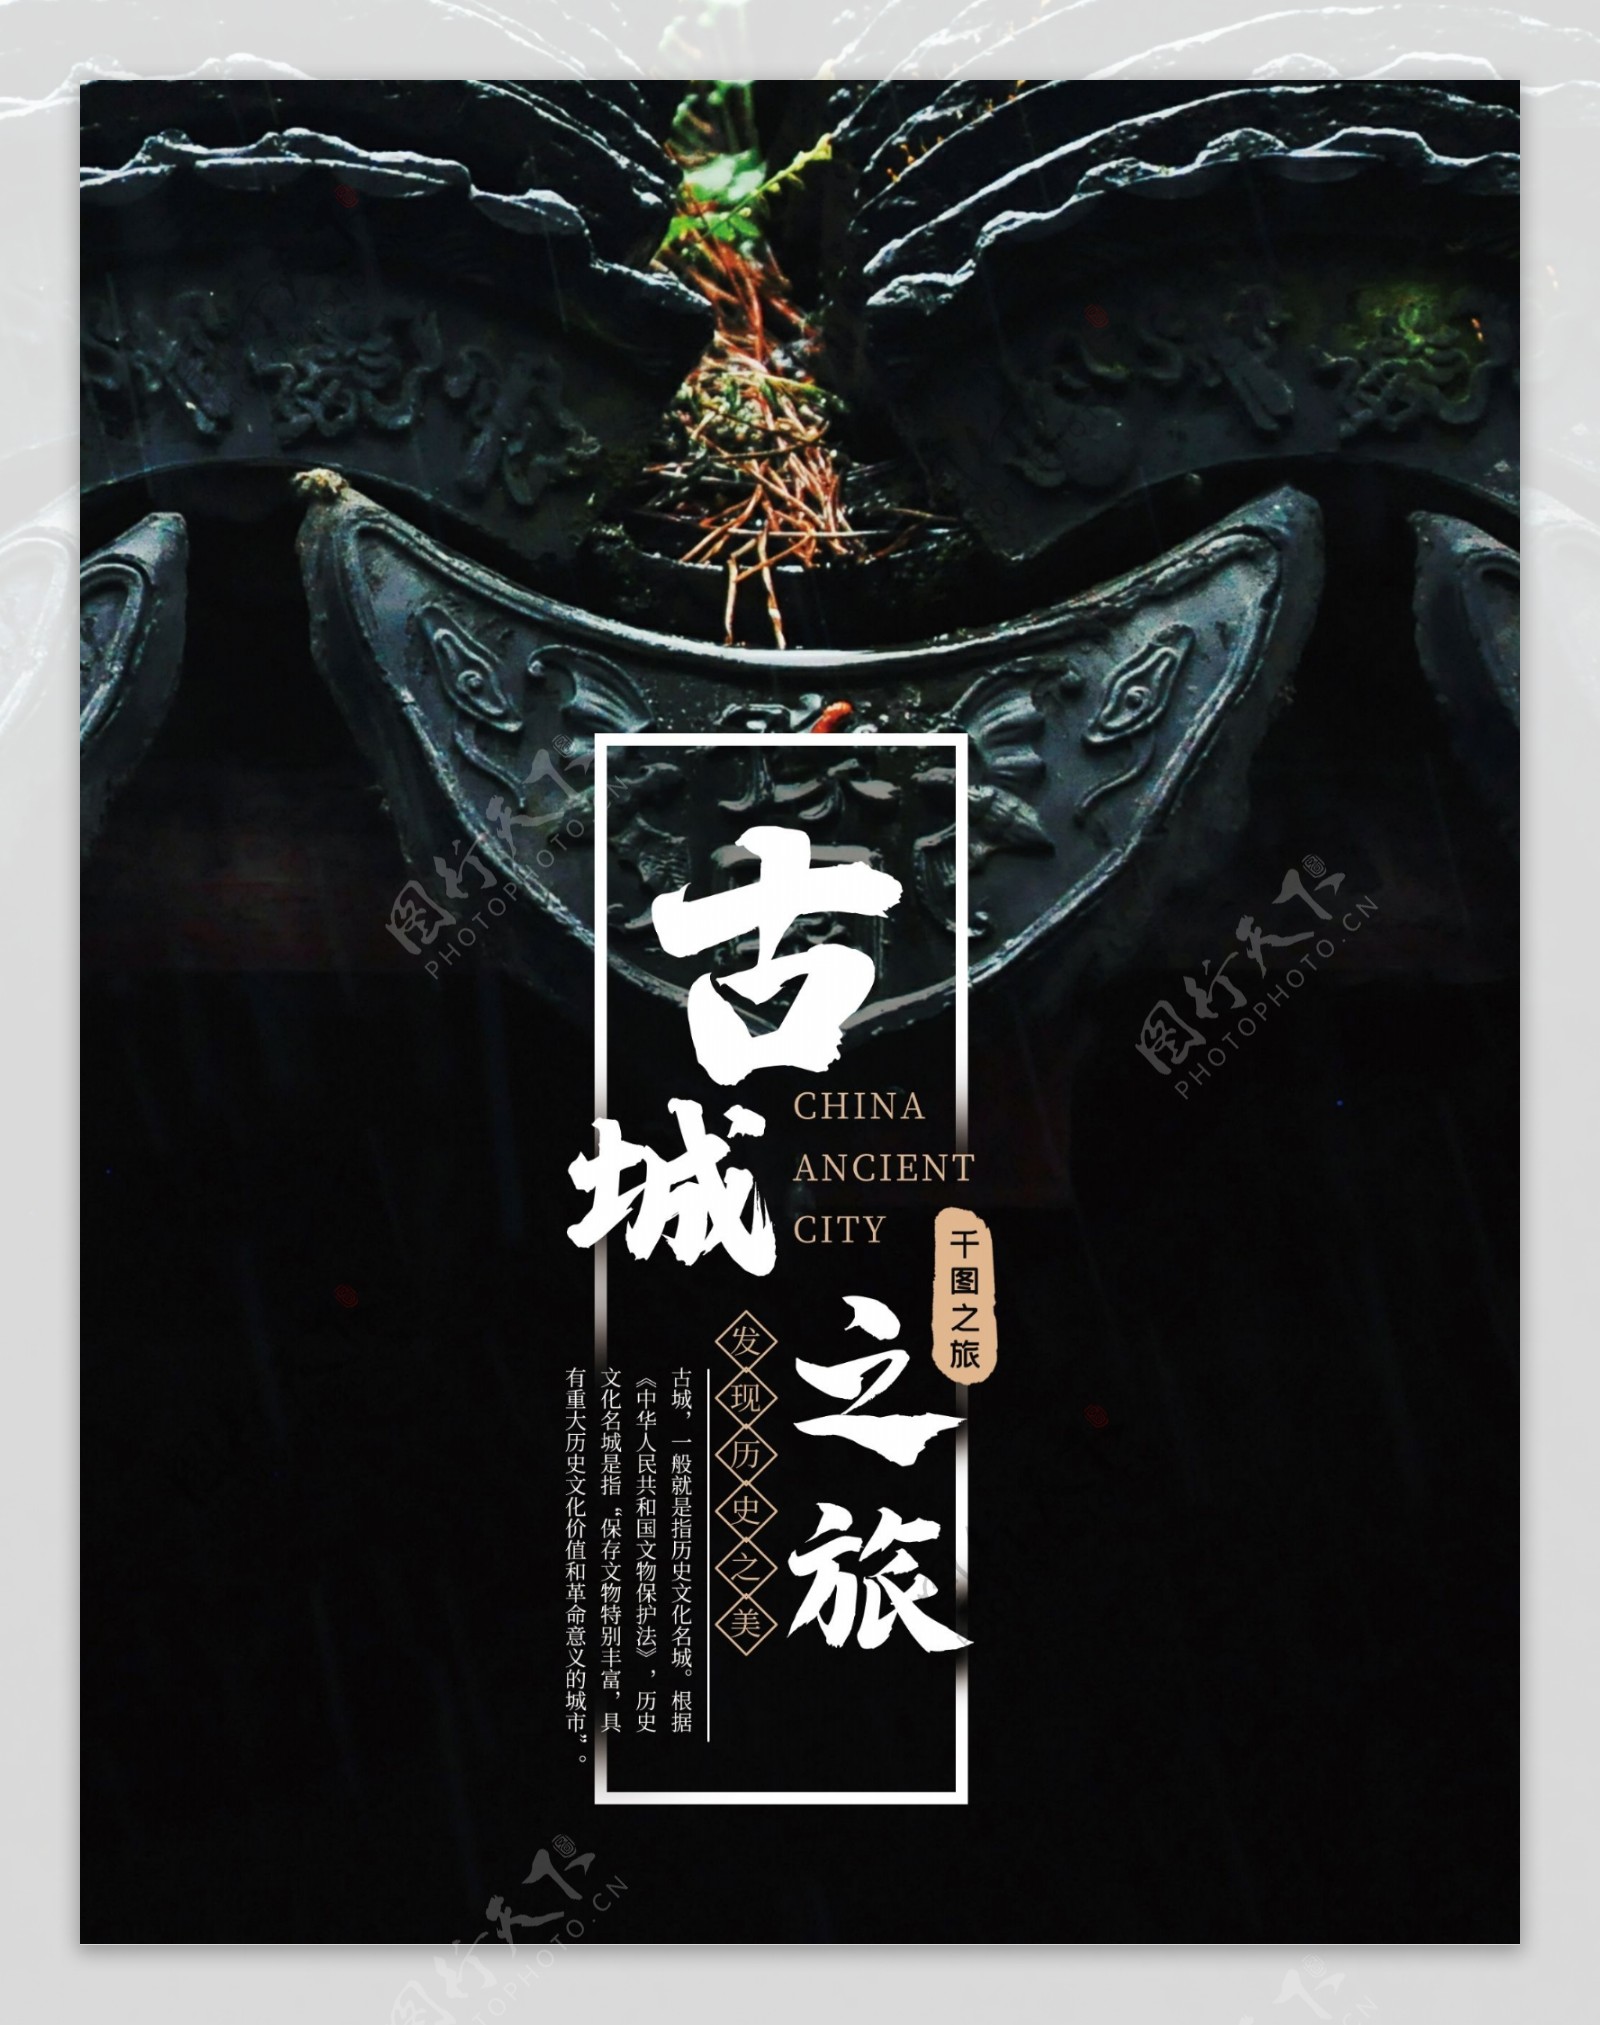 中国古城之旅旅游画册封面设计